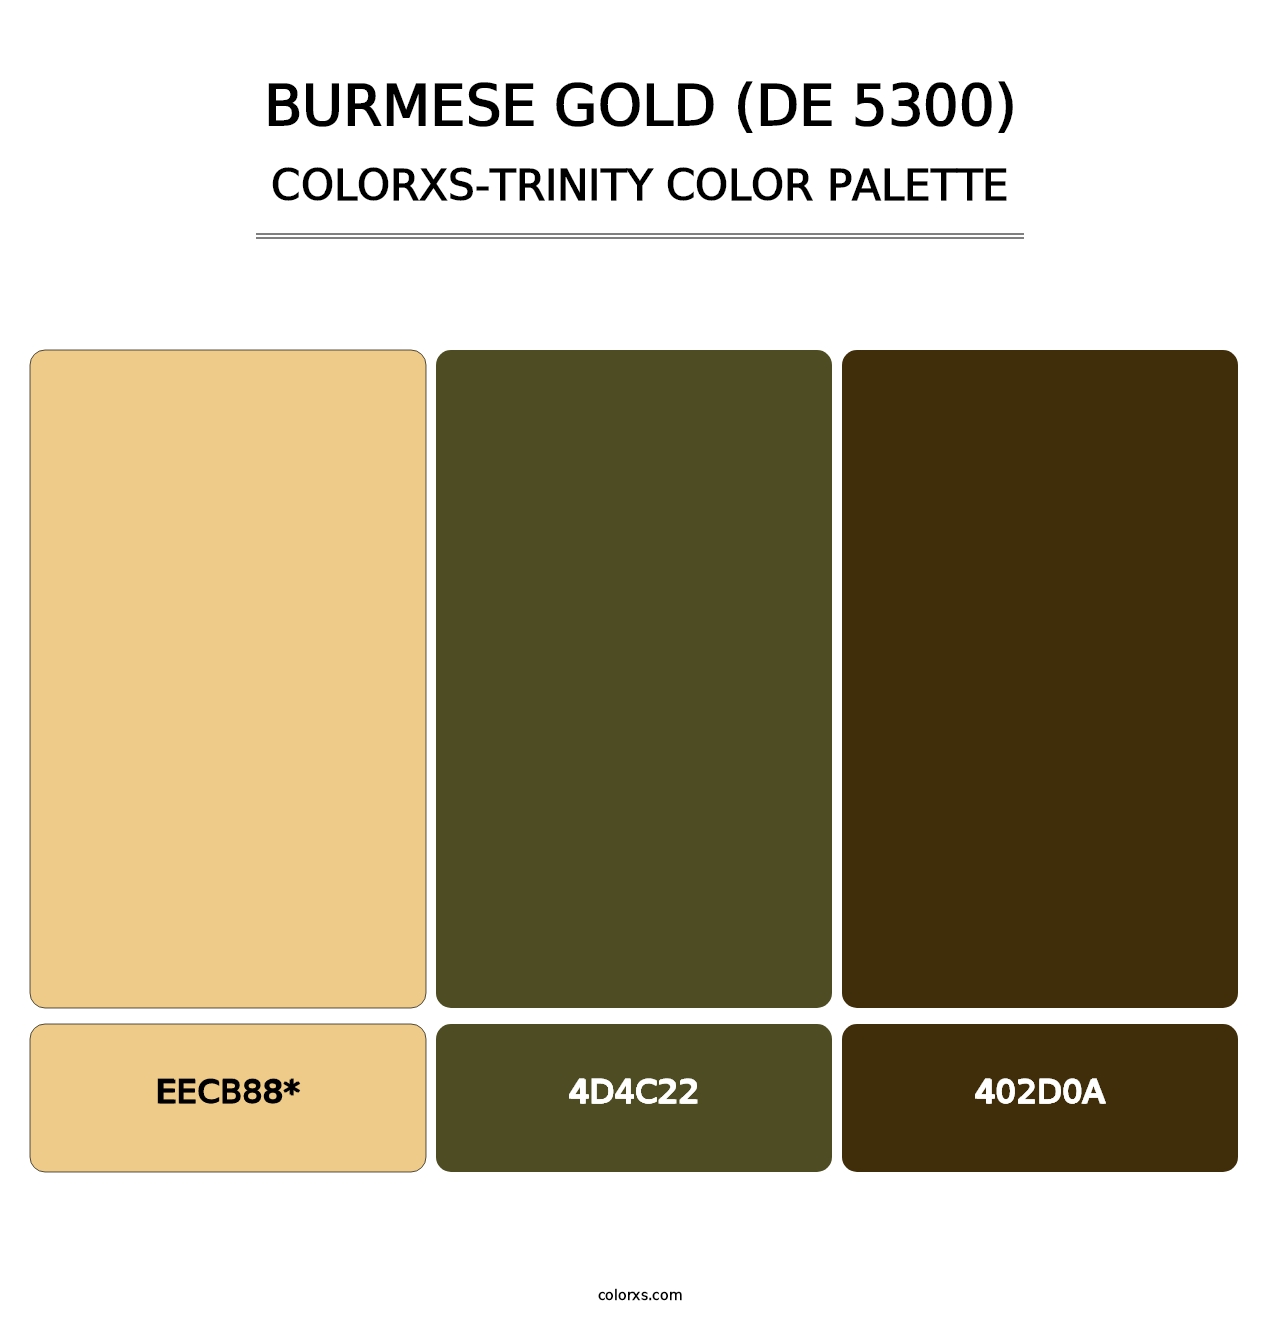 Burmese Gold (DE 5300) - Colorxs Trinity Palette